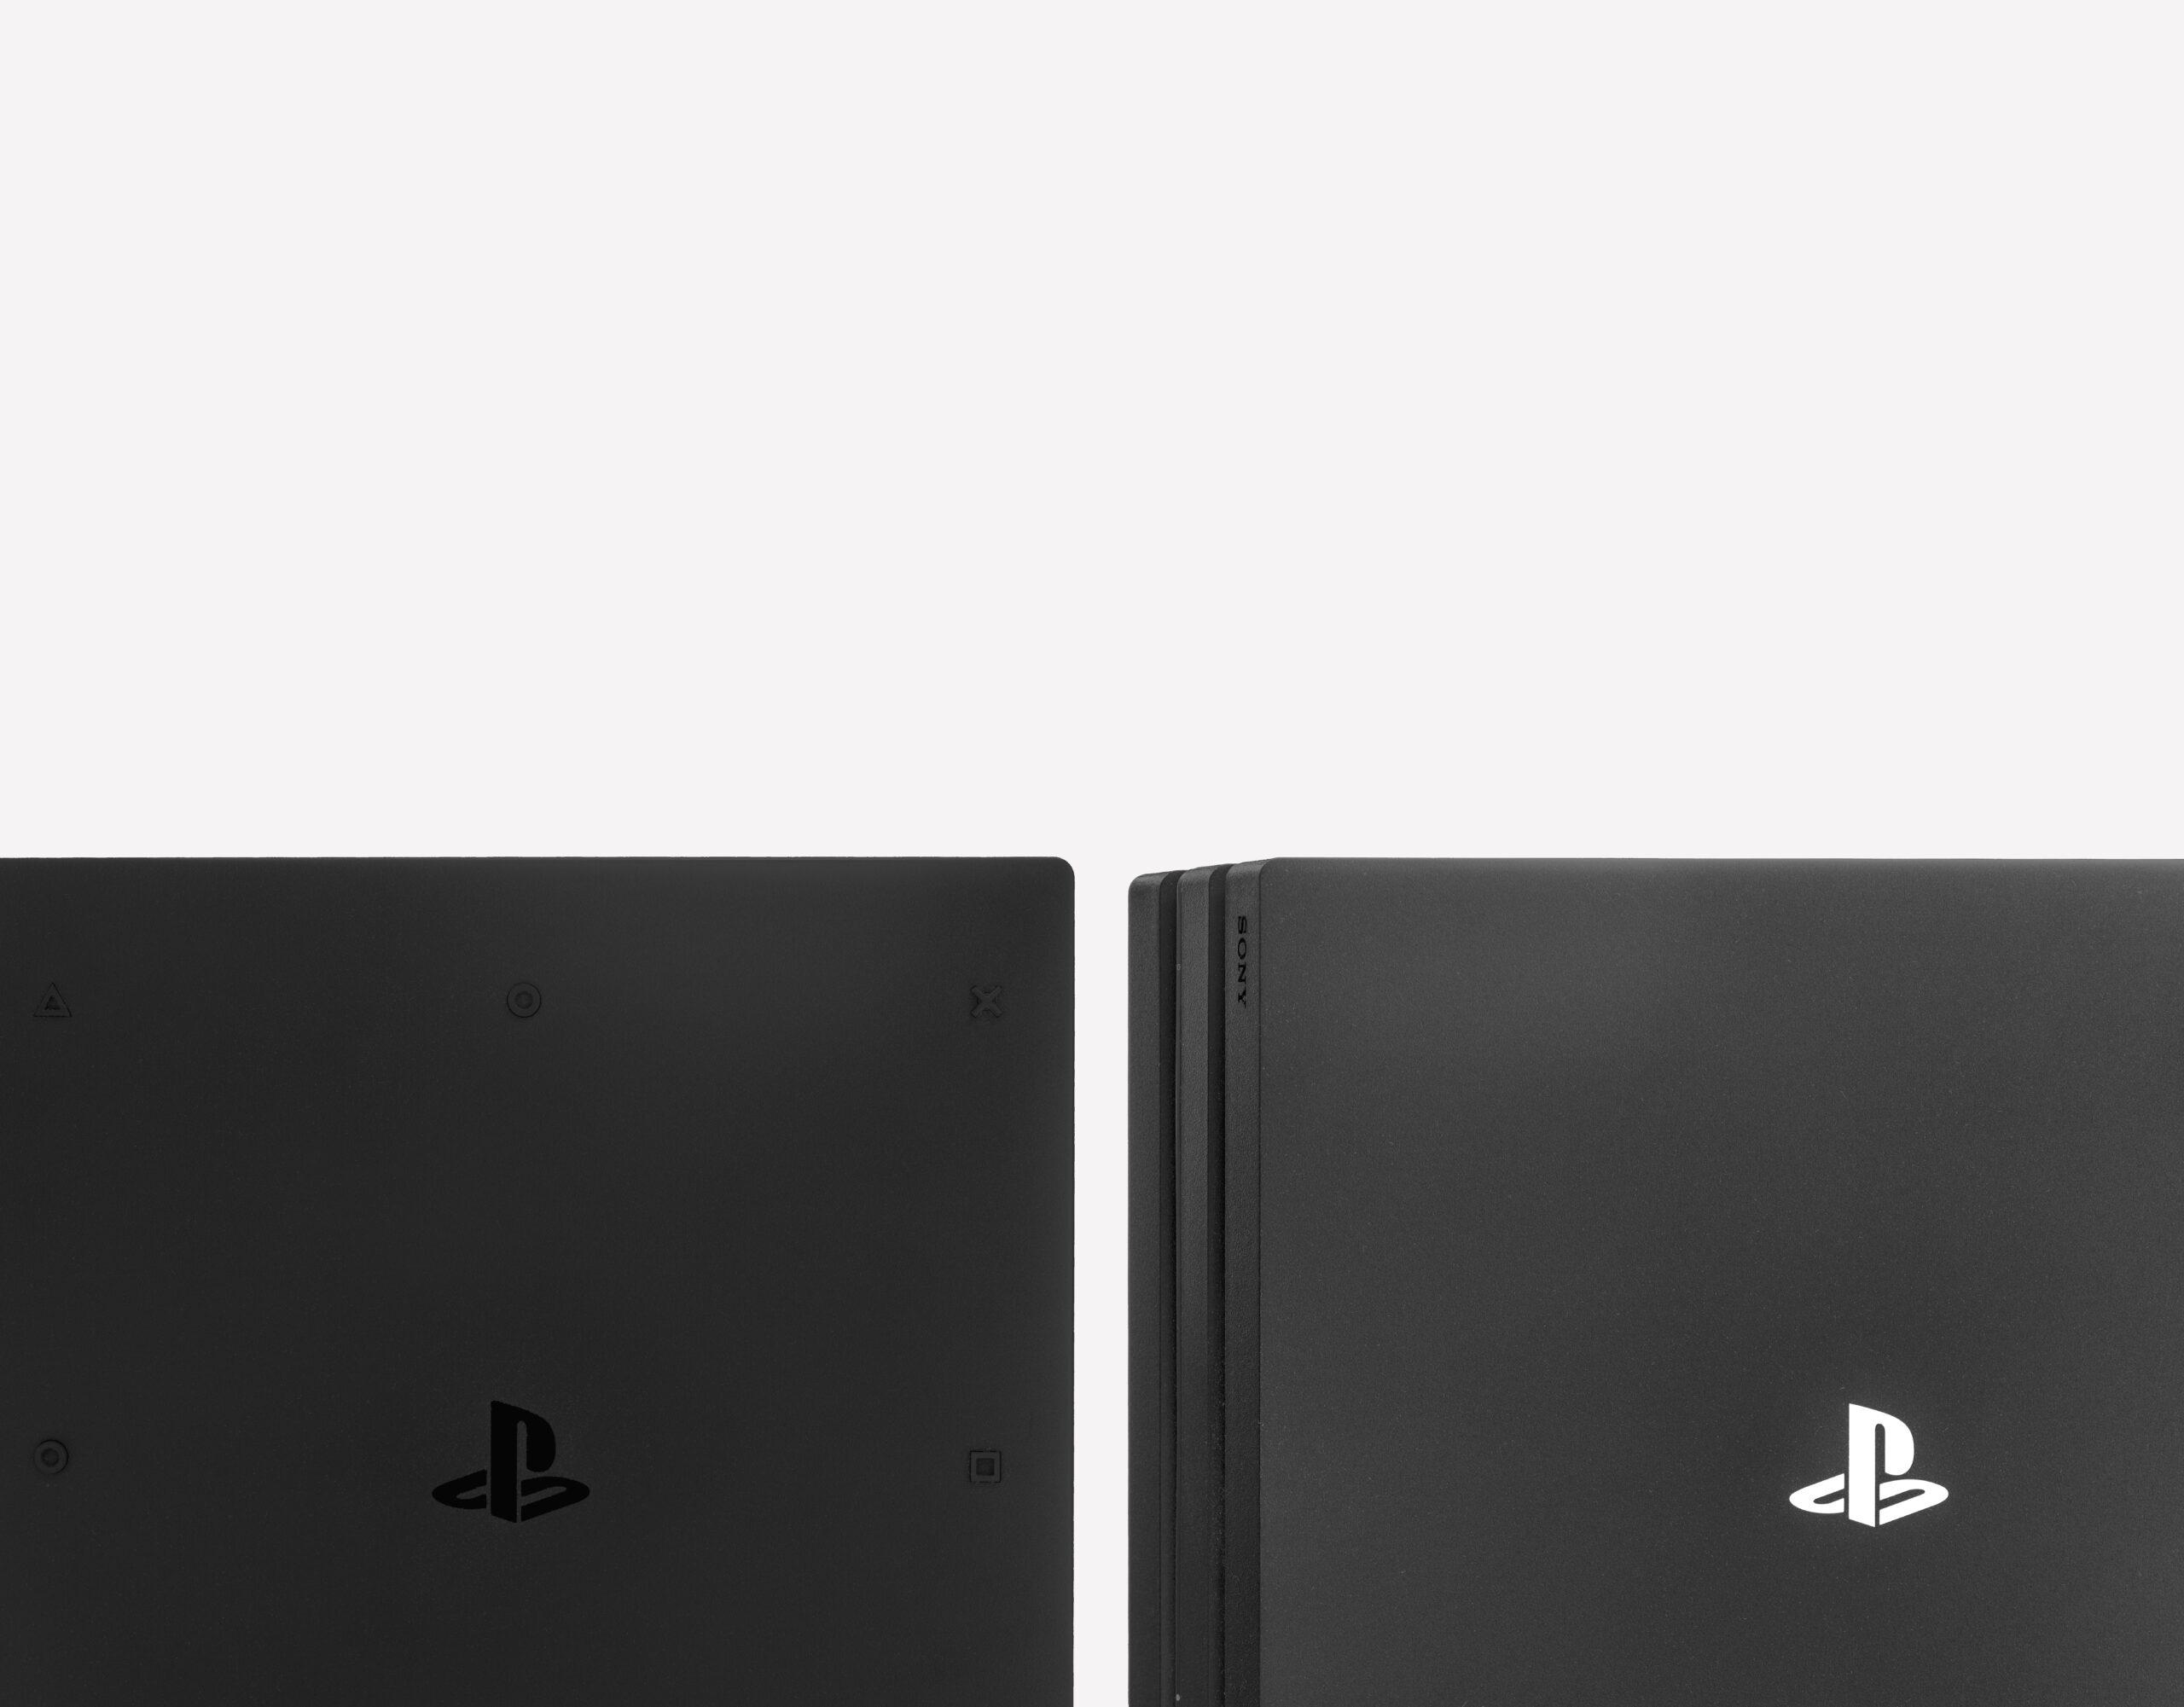 Dos PS4 slim sobre un fondo blanco.